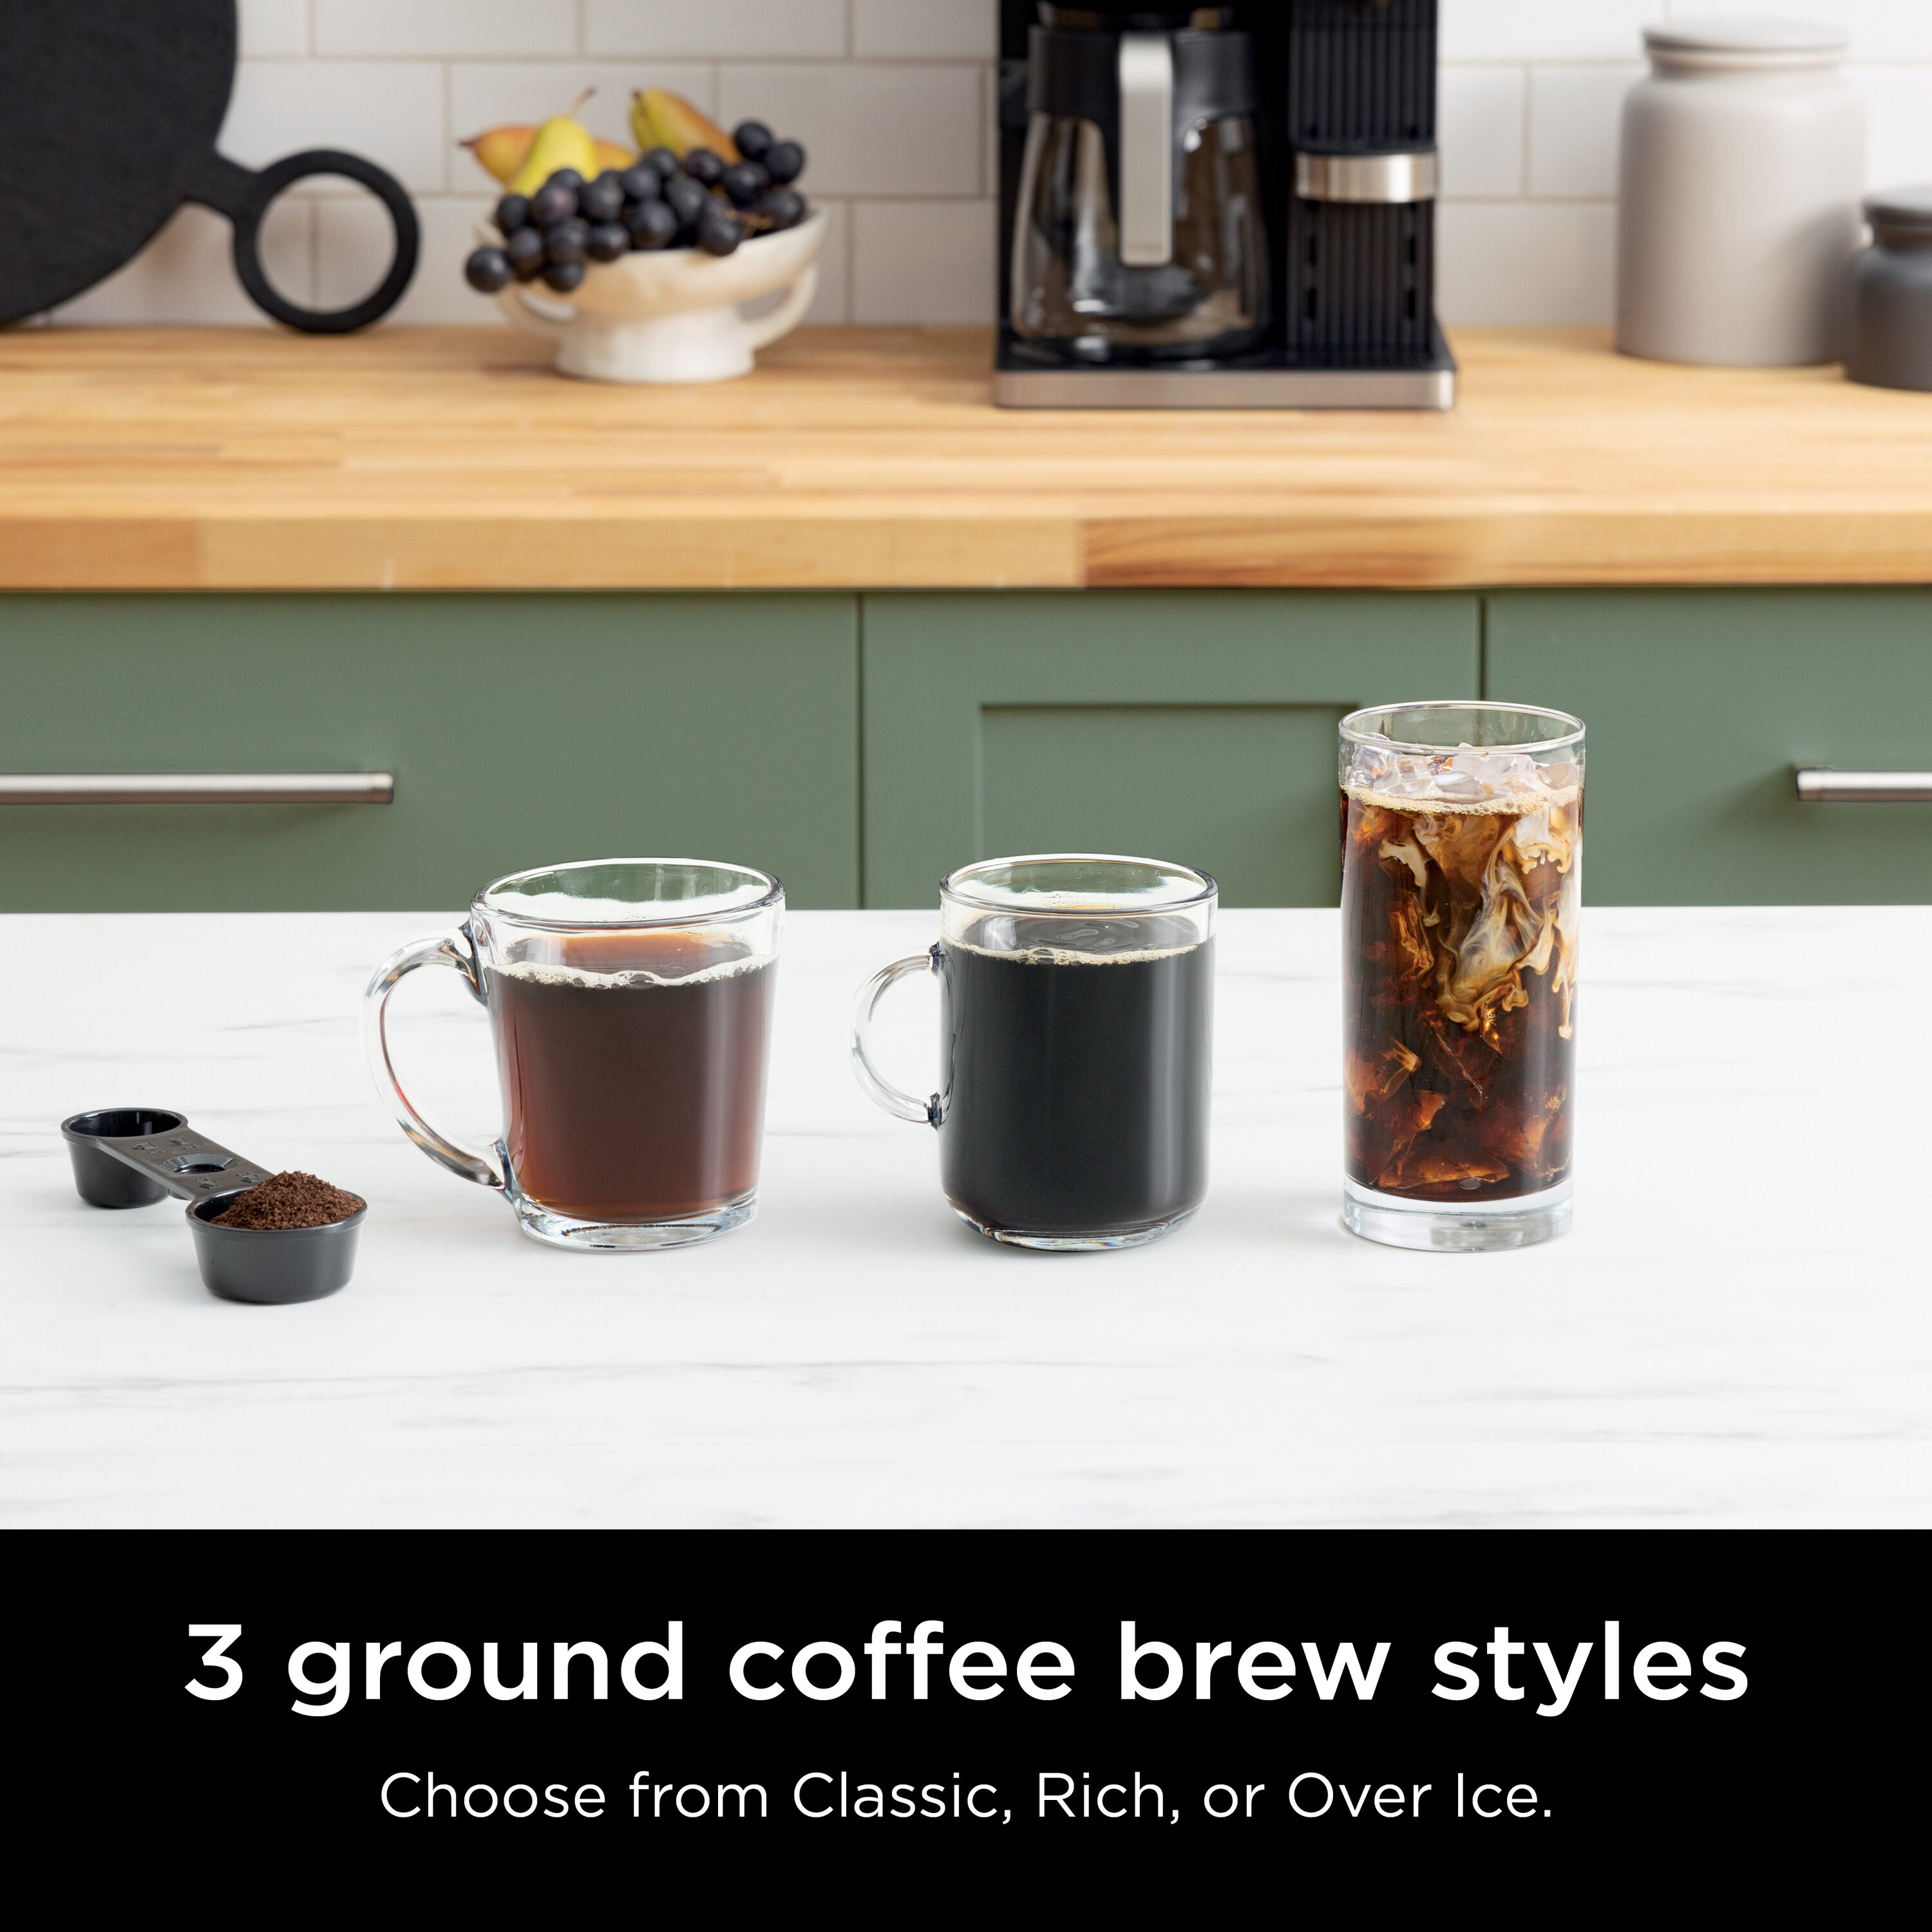 Learn About Ninja Coffee & Tea Makers – Best Buy